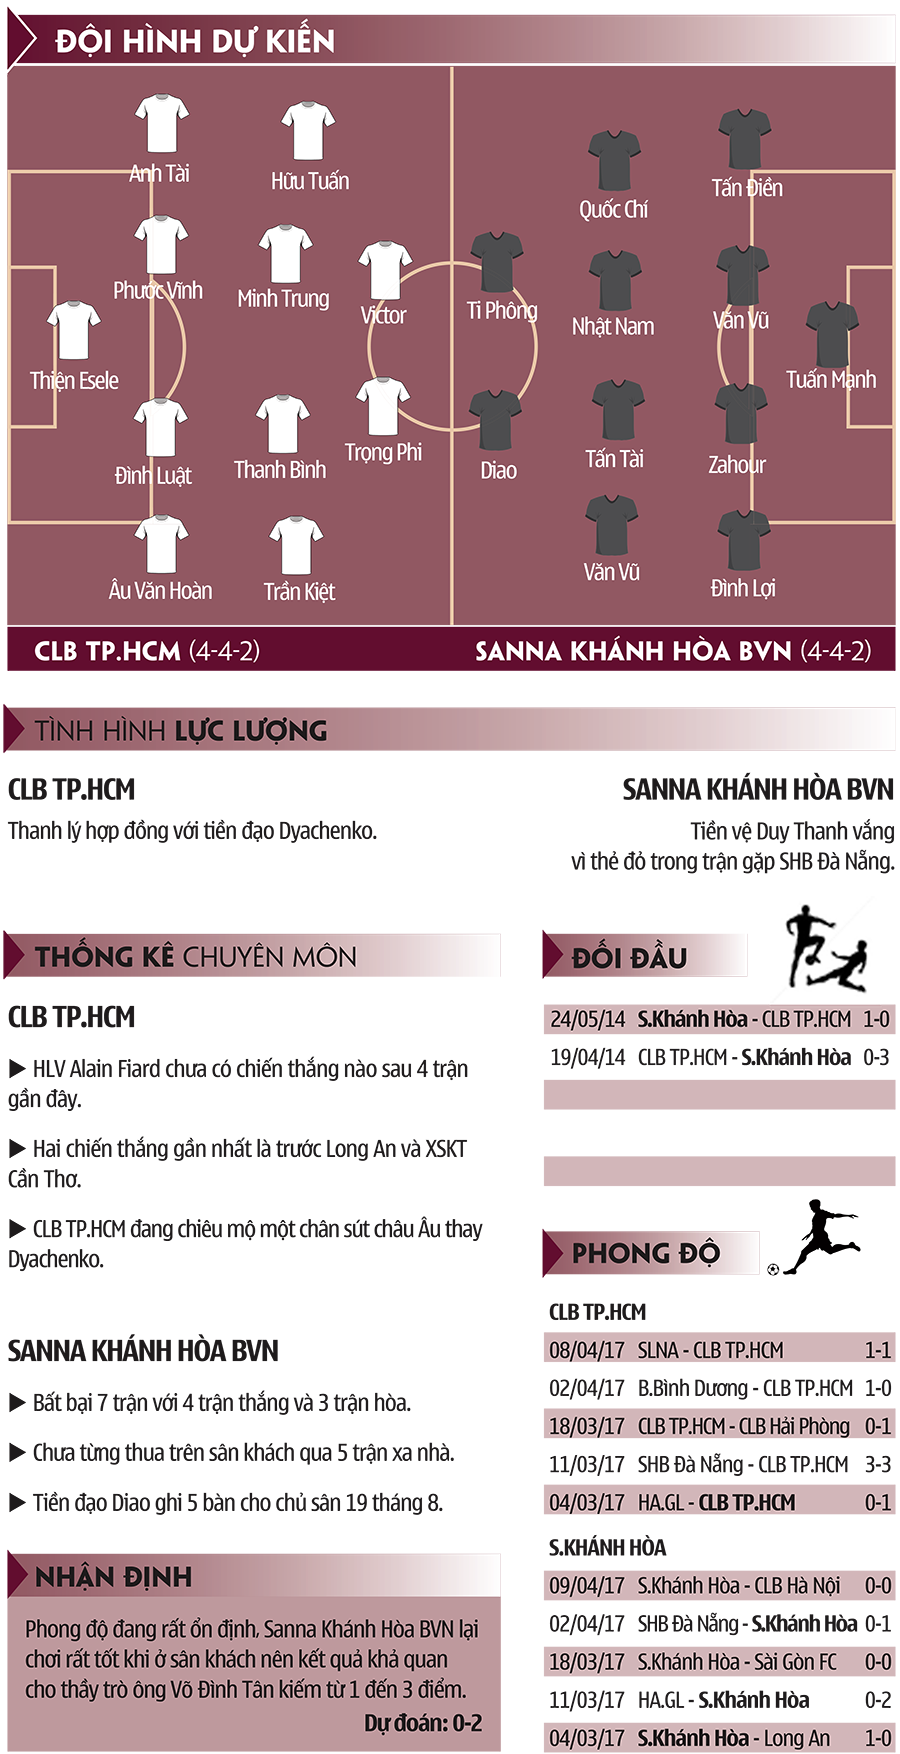 Thống kê chuyên môn của hai đội CLB TPHCM và S.Khánh Hòa BVN. Ảnh: Vịt Con.